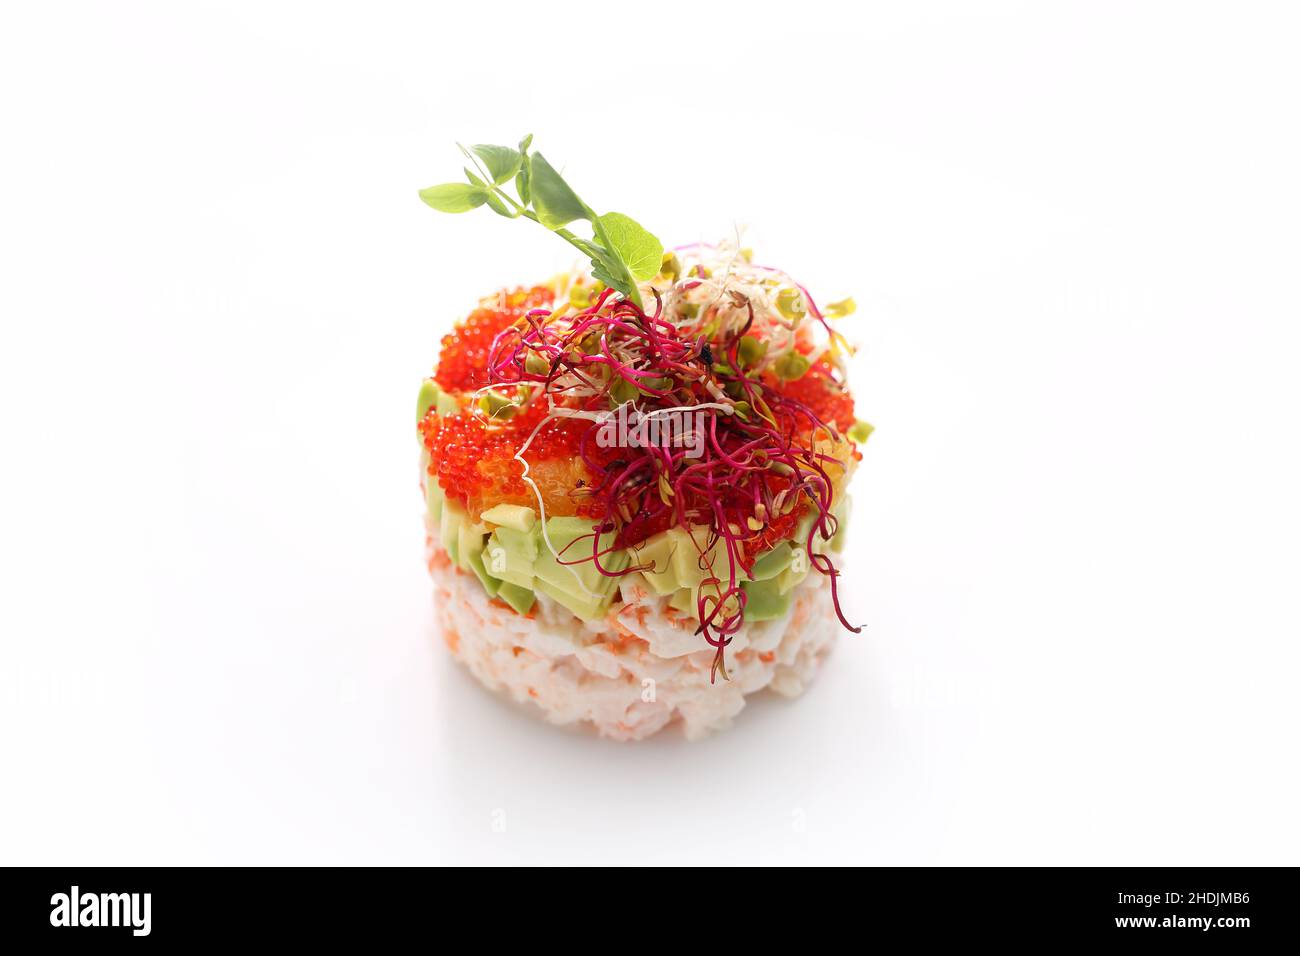 Tartare de crabe haché avec caviar et avocat.Salade de poisson frais hachée.Plat traditionnel japonais sur fond blanc. Banque D'Images